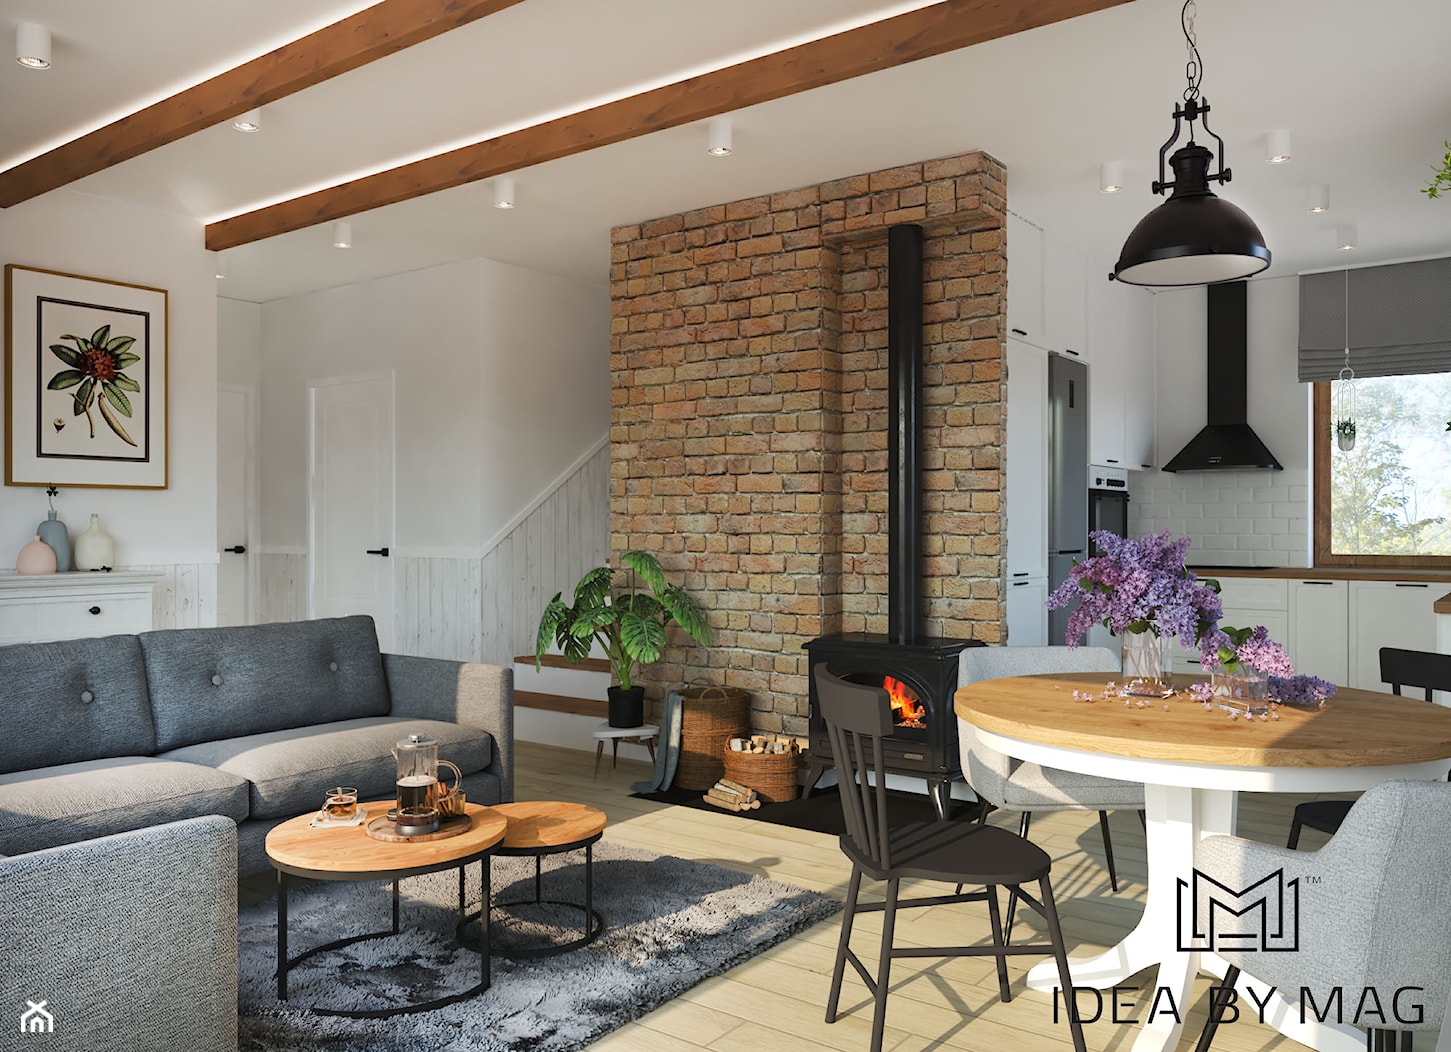 Sielski klimat - Średni biały salon z kuchnią z jadalnią, styl rustykalny - zdjęcie od Idea by Mag. - Homebook